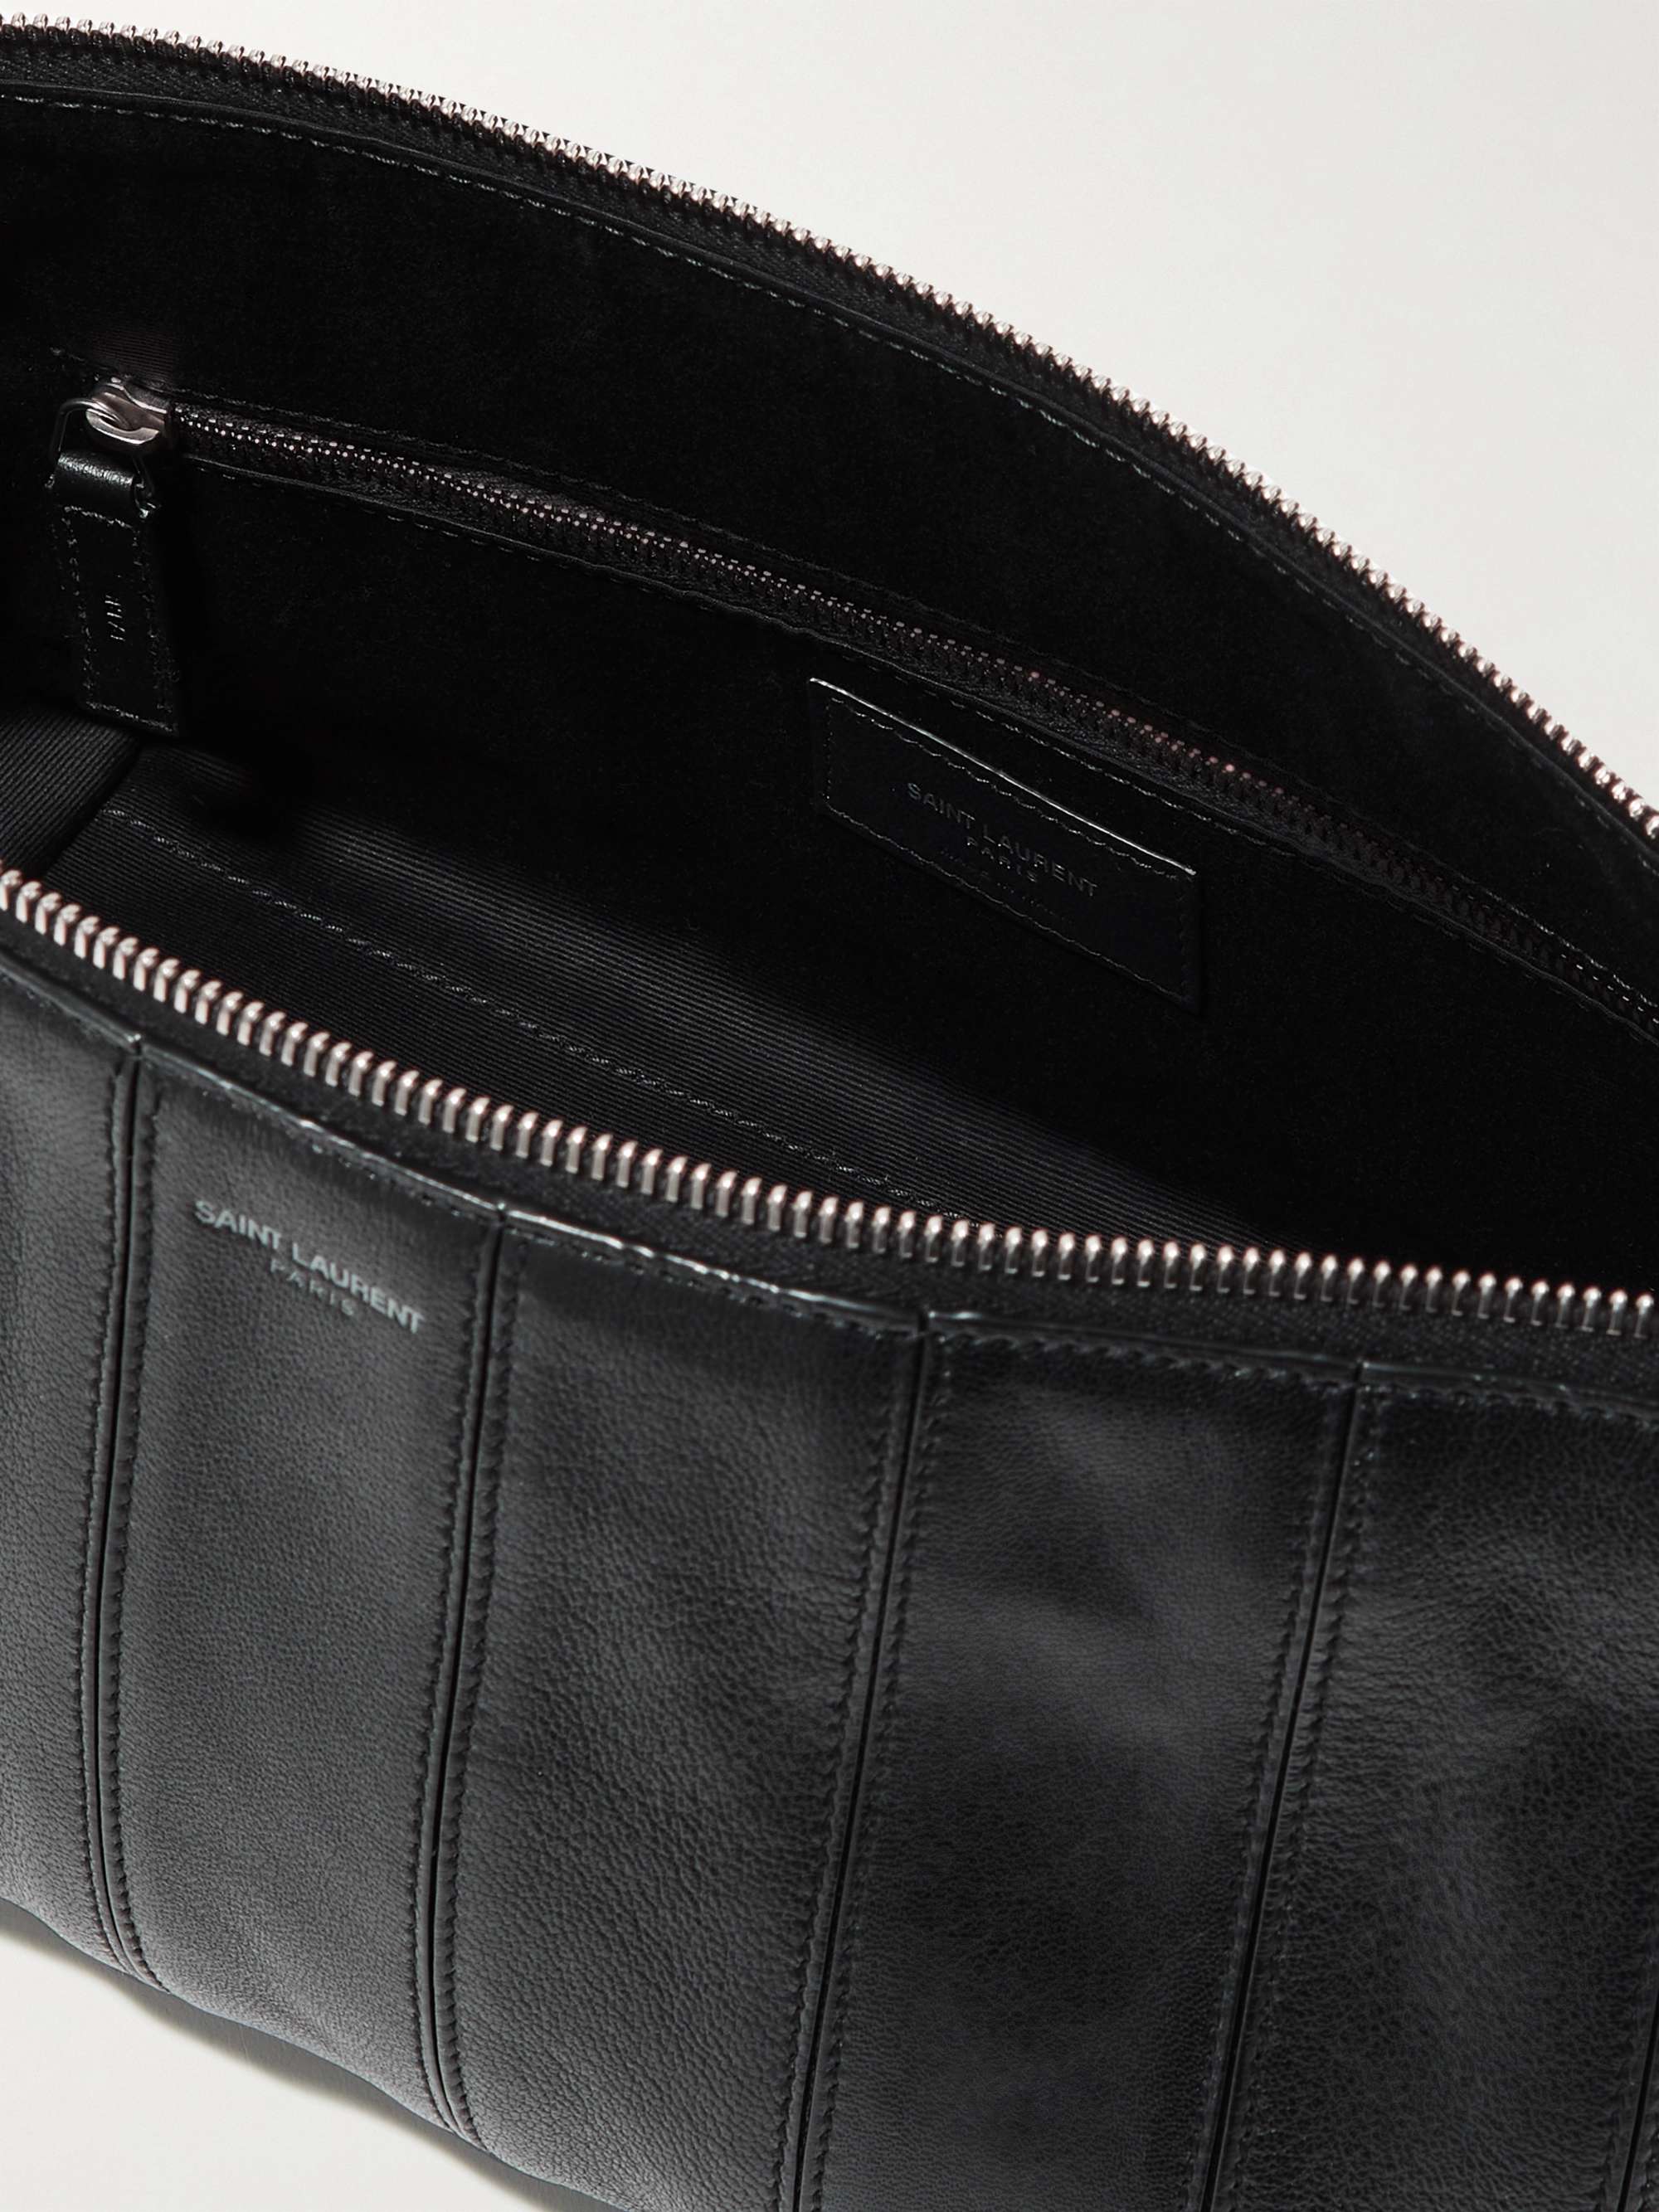 SAINT LAURENT Blitz Leather Messenger Bag